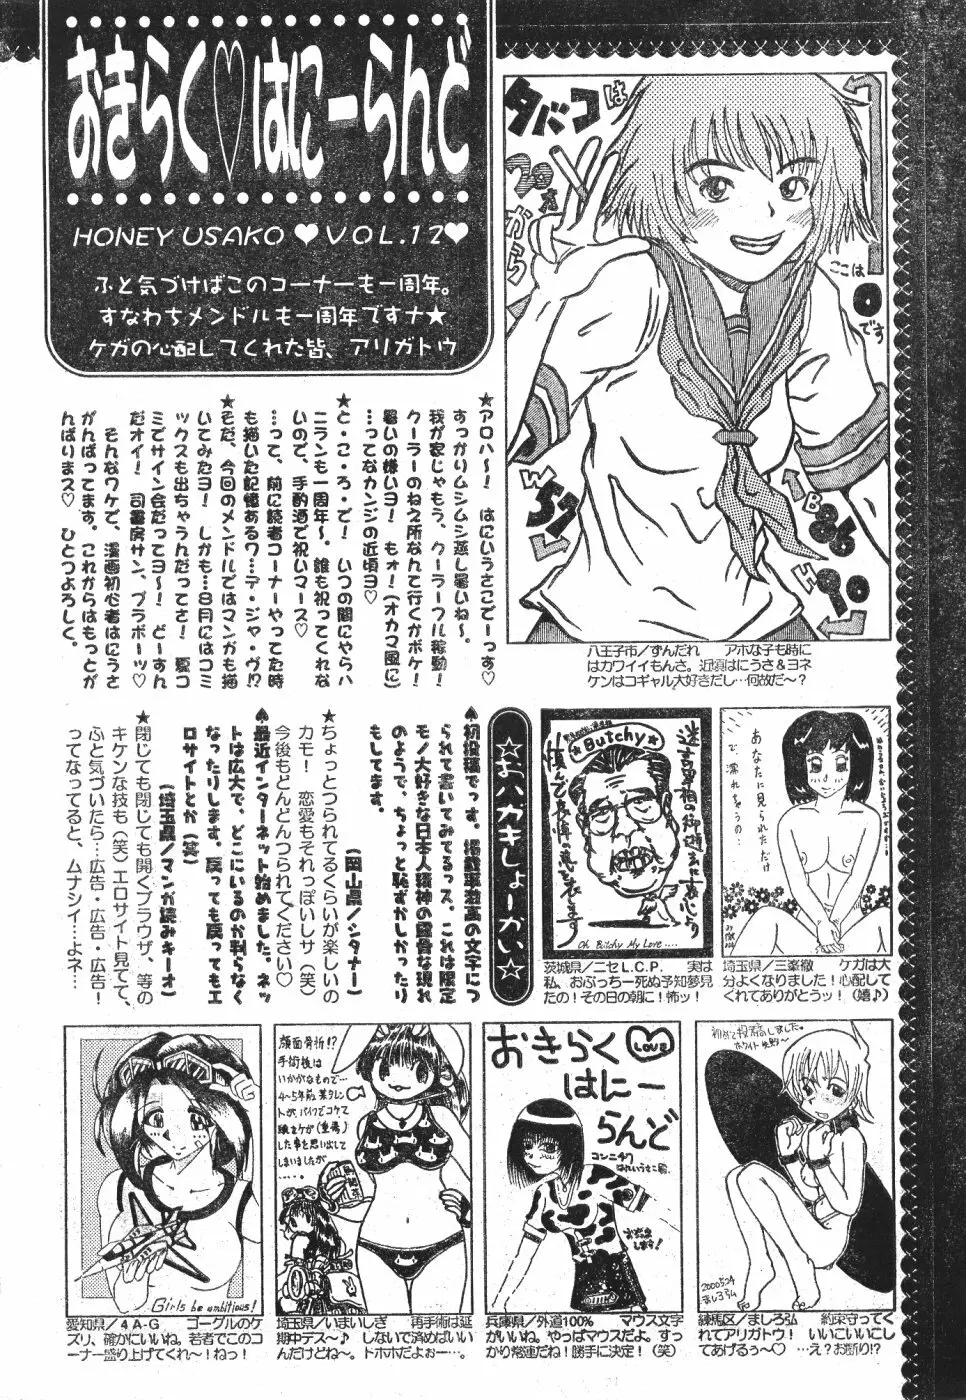 Men’s Dolphin Vol 12 2000-08-01 198ページ